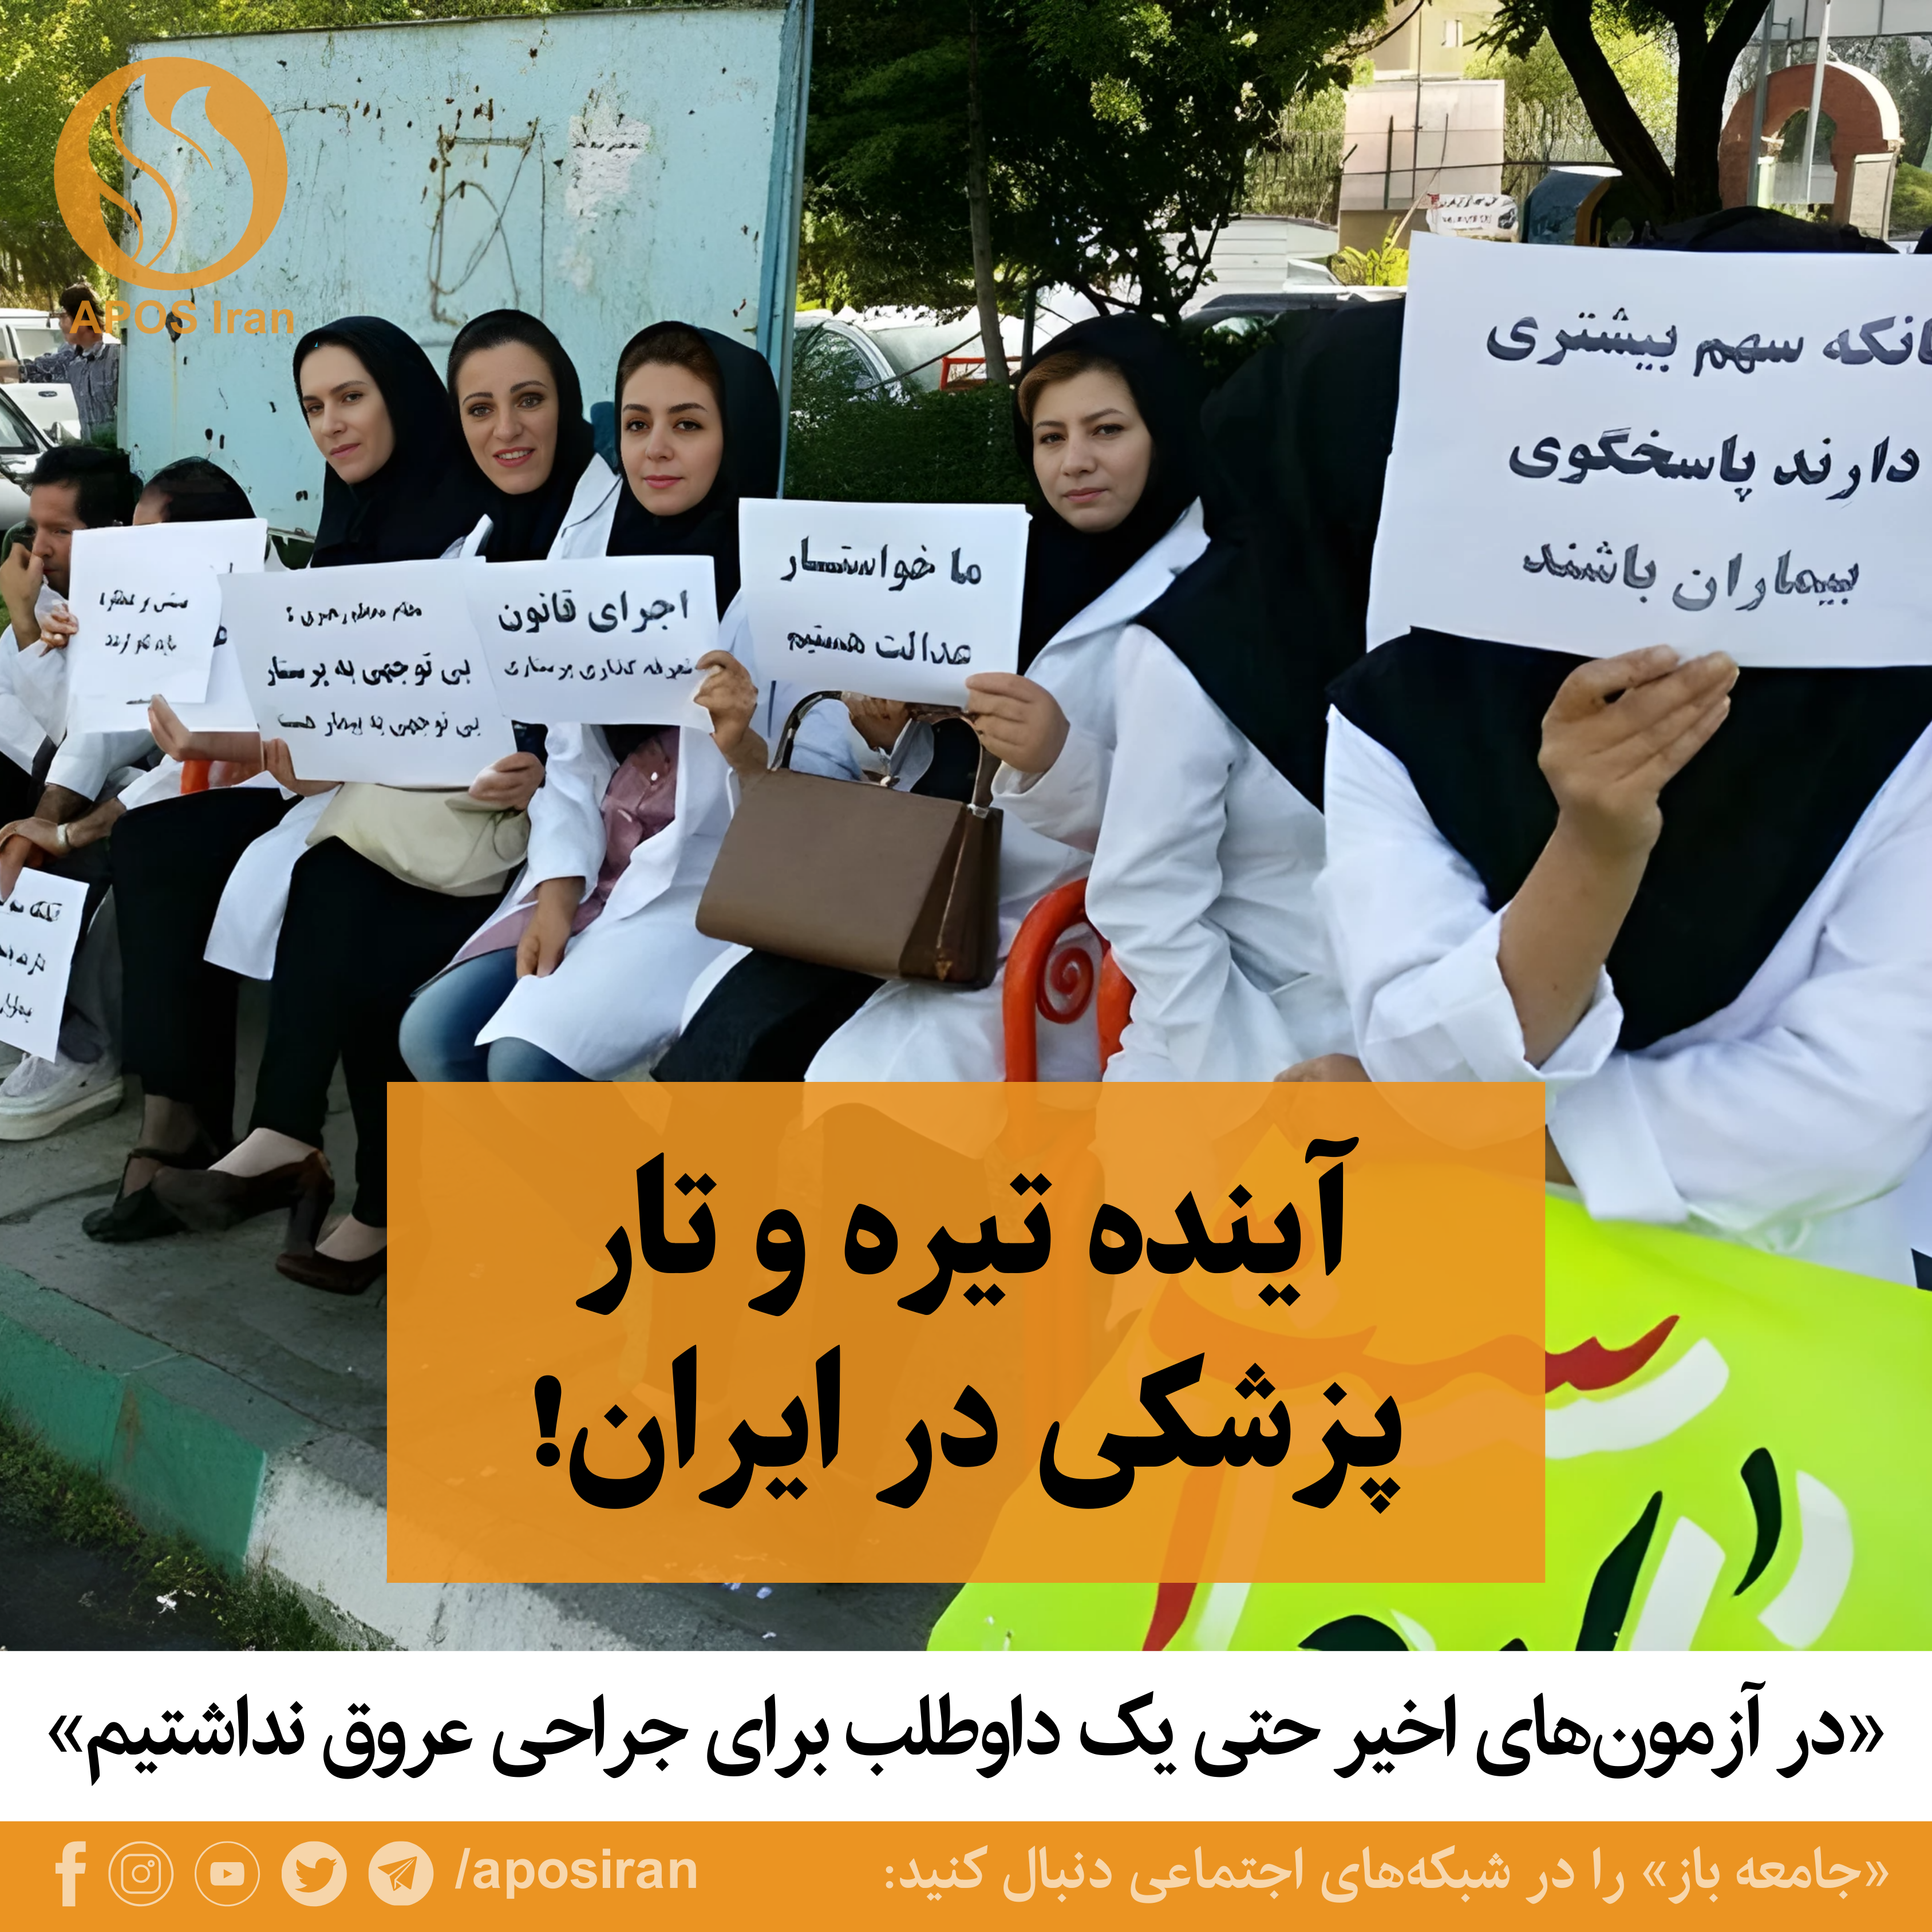 آینده پزشکی در ایران نگران‌کننده است. با ادامه این وضعیت در ۱۰ سال آینده باید از خارج پزشک وارد کنیم.